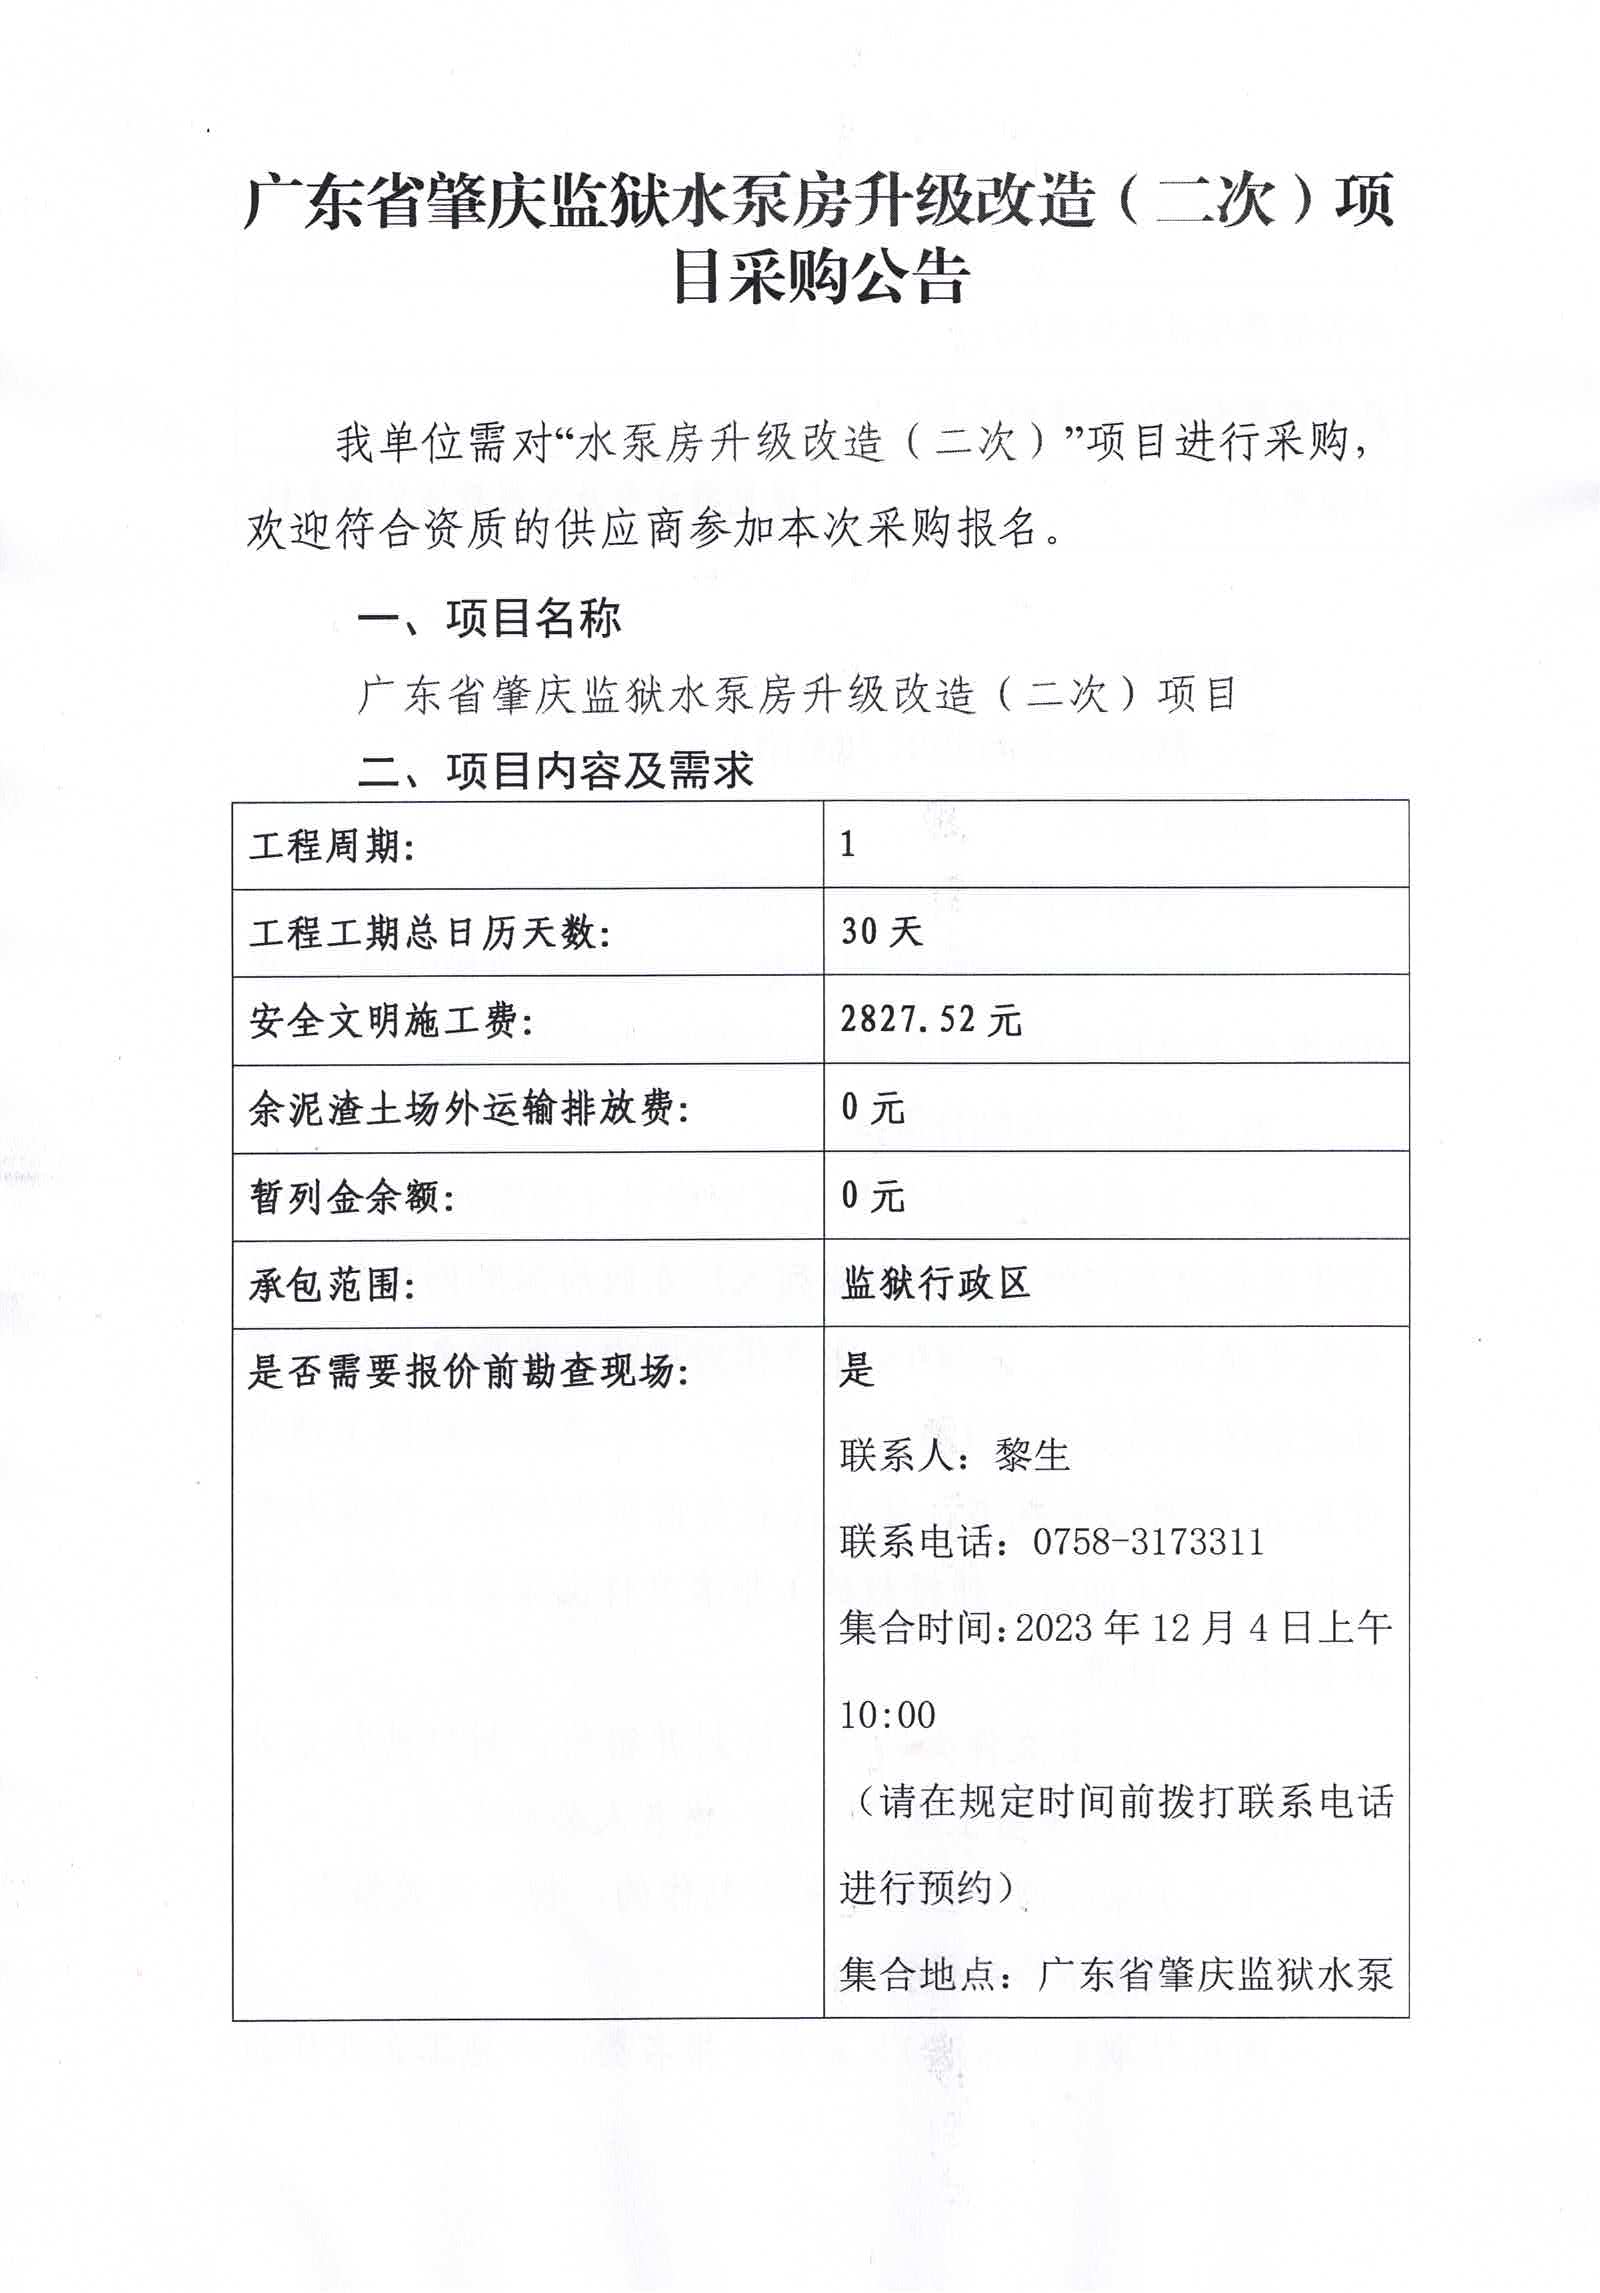 广东省肇庆监狱水泵房升级改造（二次）项目采购公告1.jpg